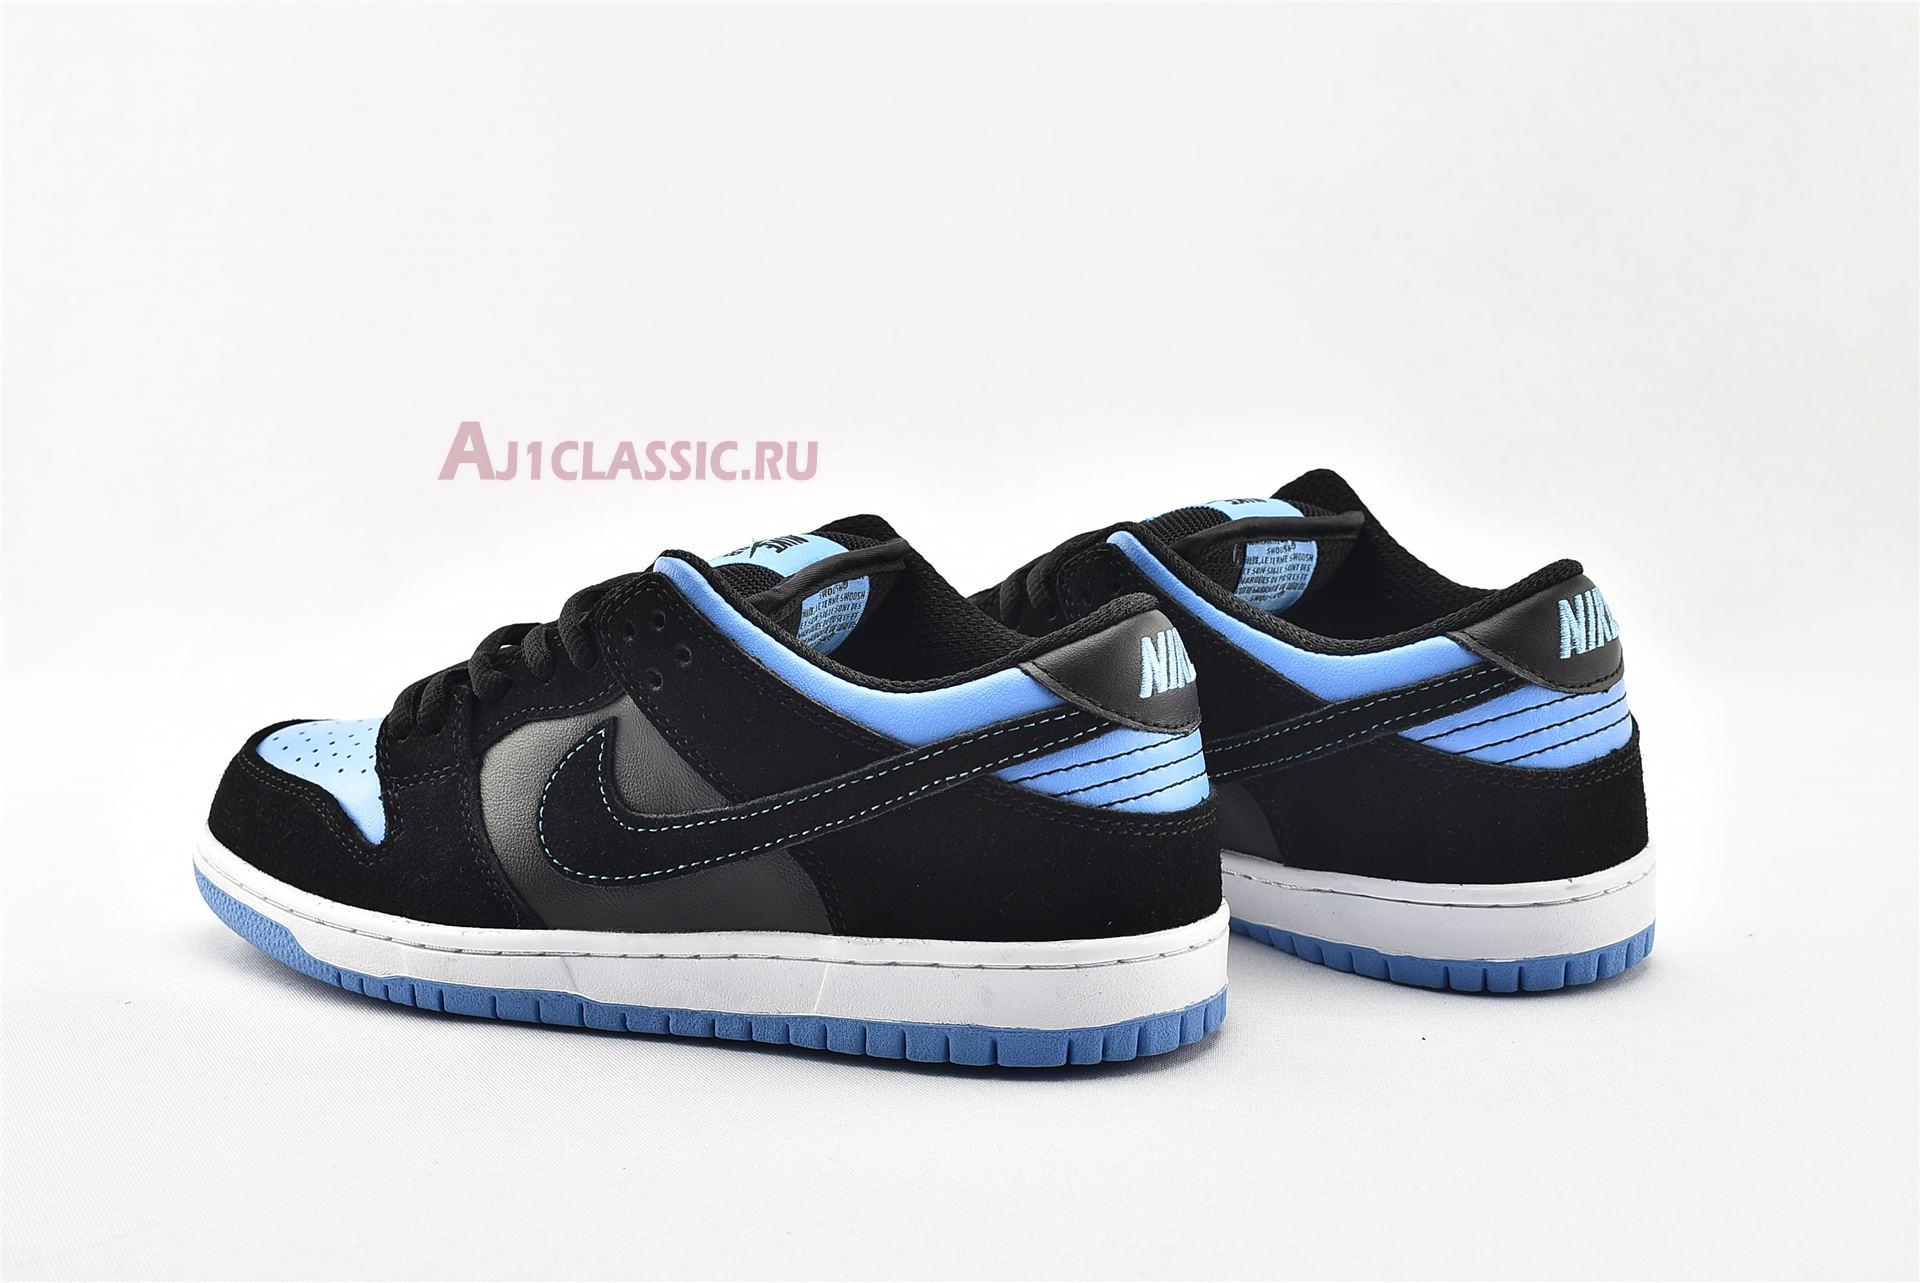 Nike SB Dunk Low Pro "University Blue" 304292-048